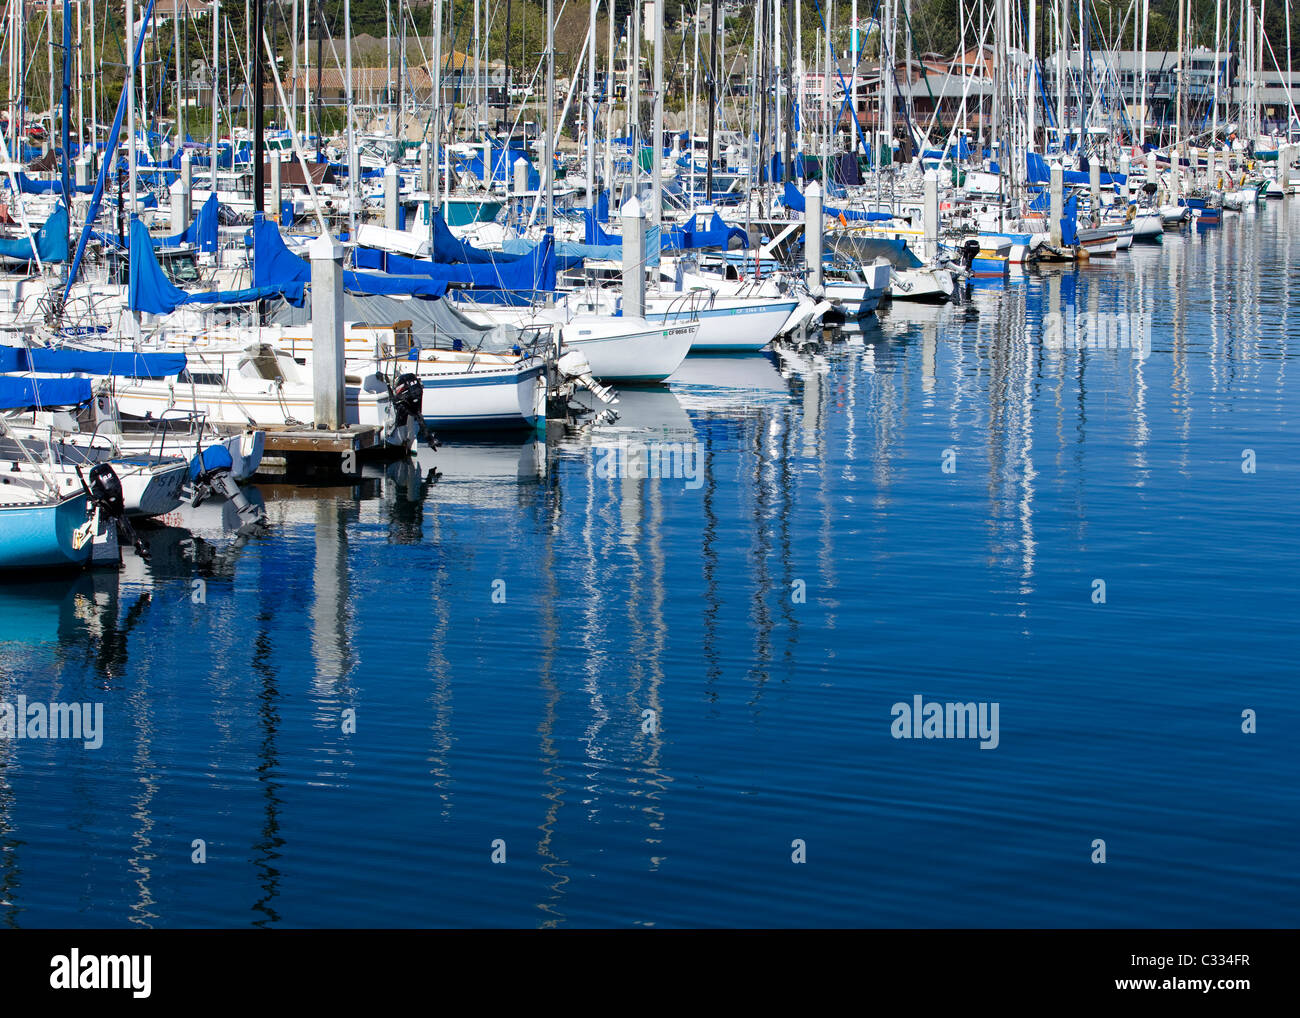 Small sail boats docked in marina slips Stock Photo